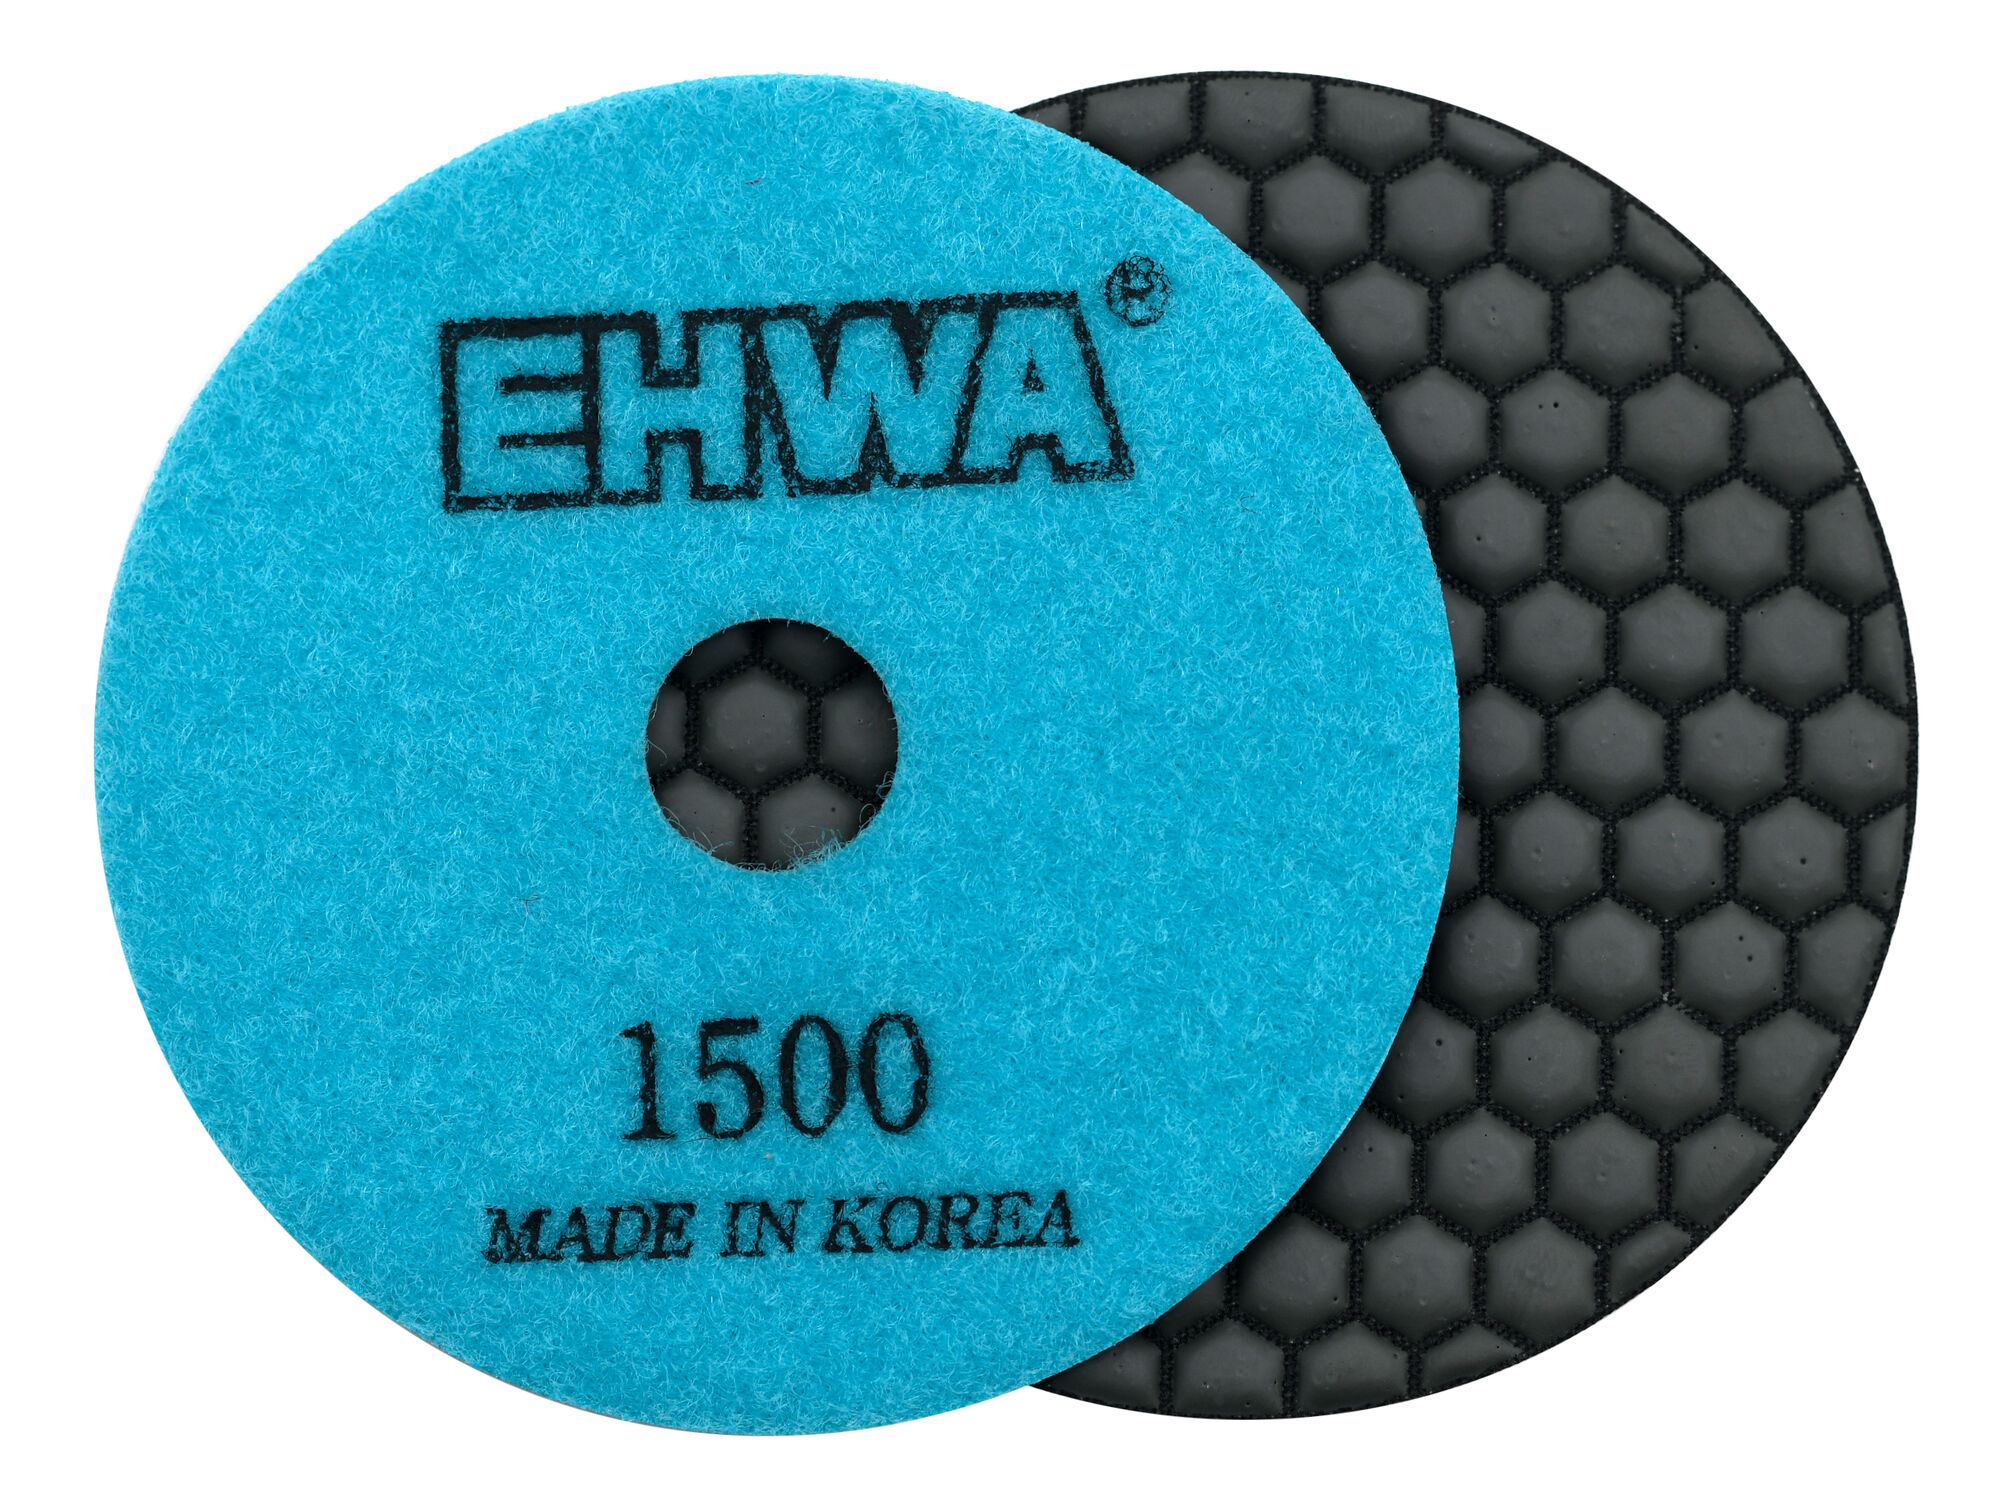 Алмазные гибкие полировальные диски № 1500 d 100 мм по камню EHWA (Ихва) сухие